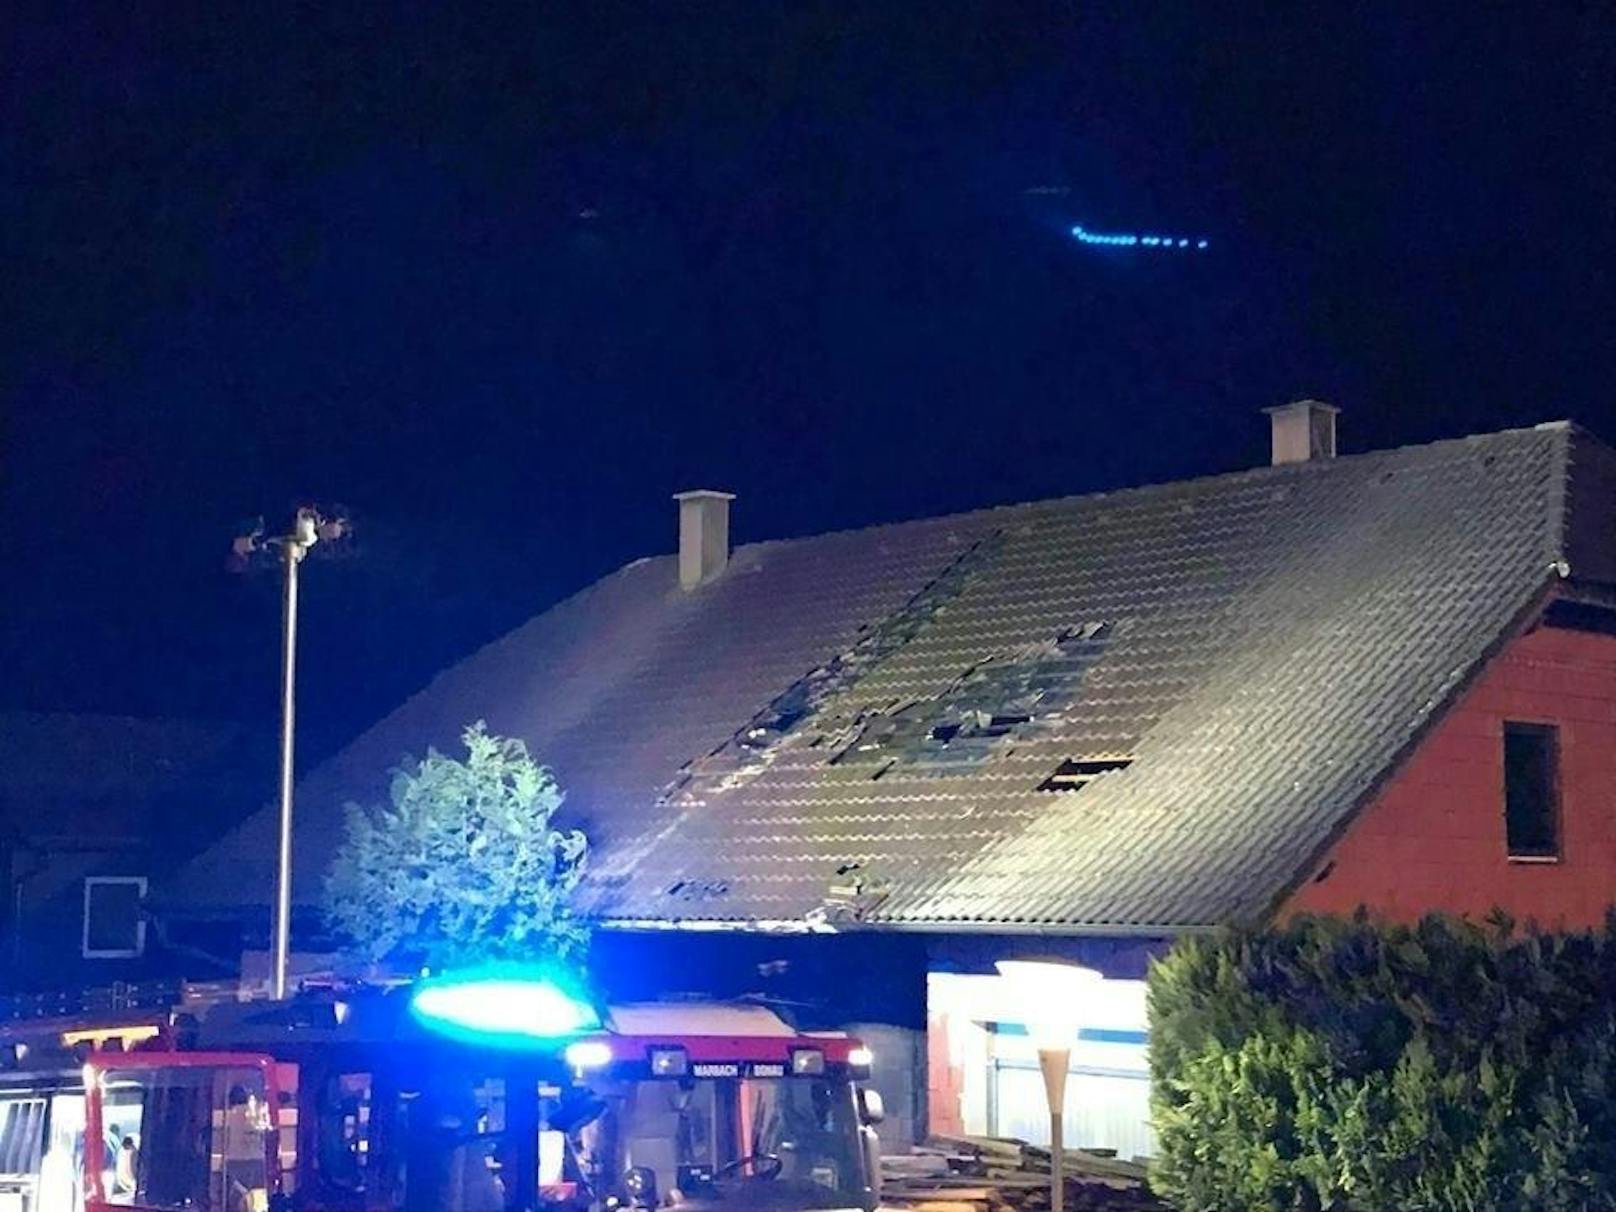 Mit dem Hubsteiger konnte schließlich auch das Feuer am Dach gelöscht werden.